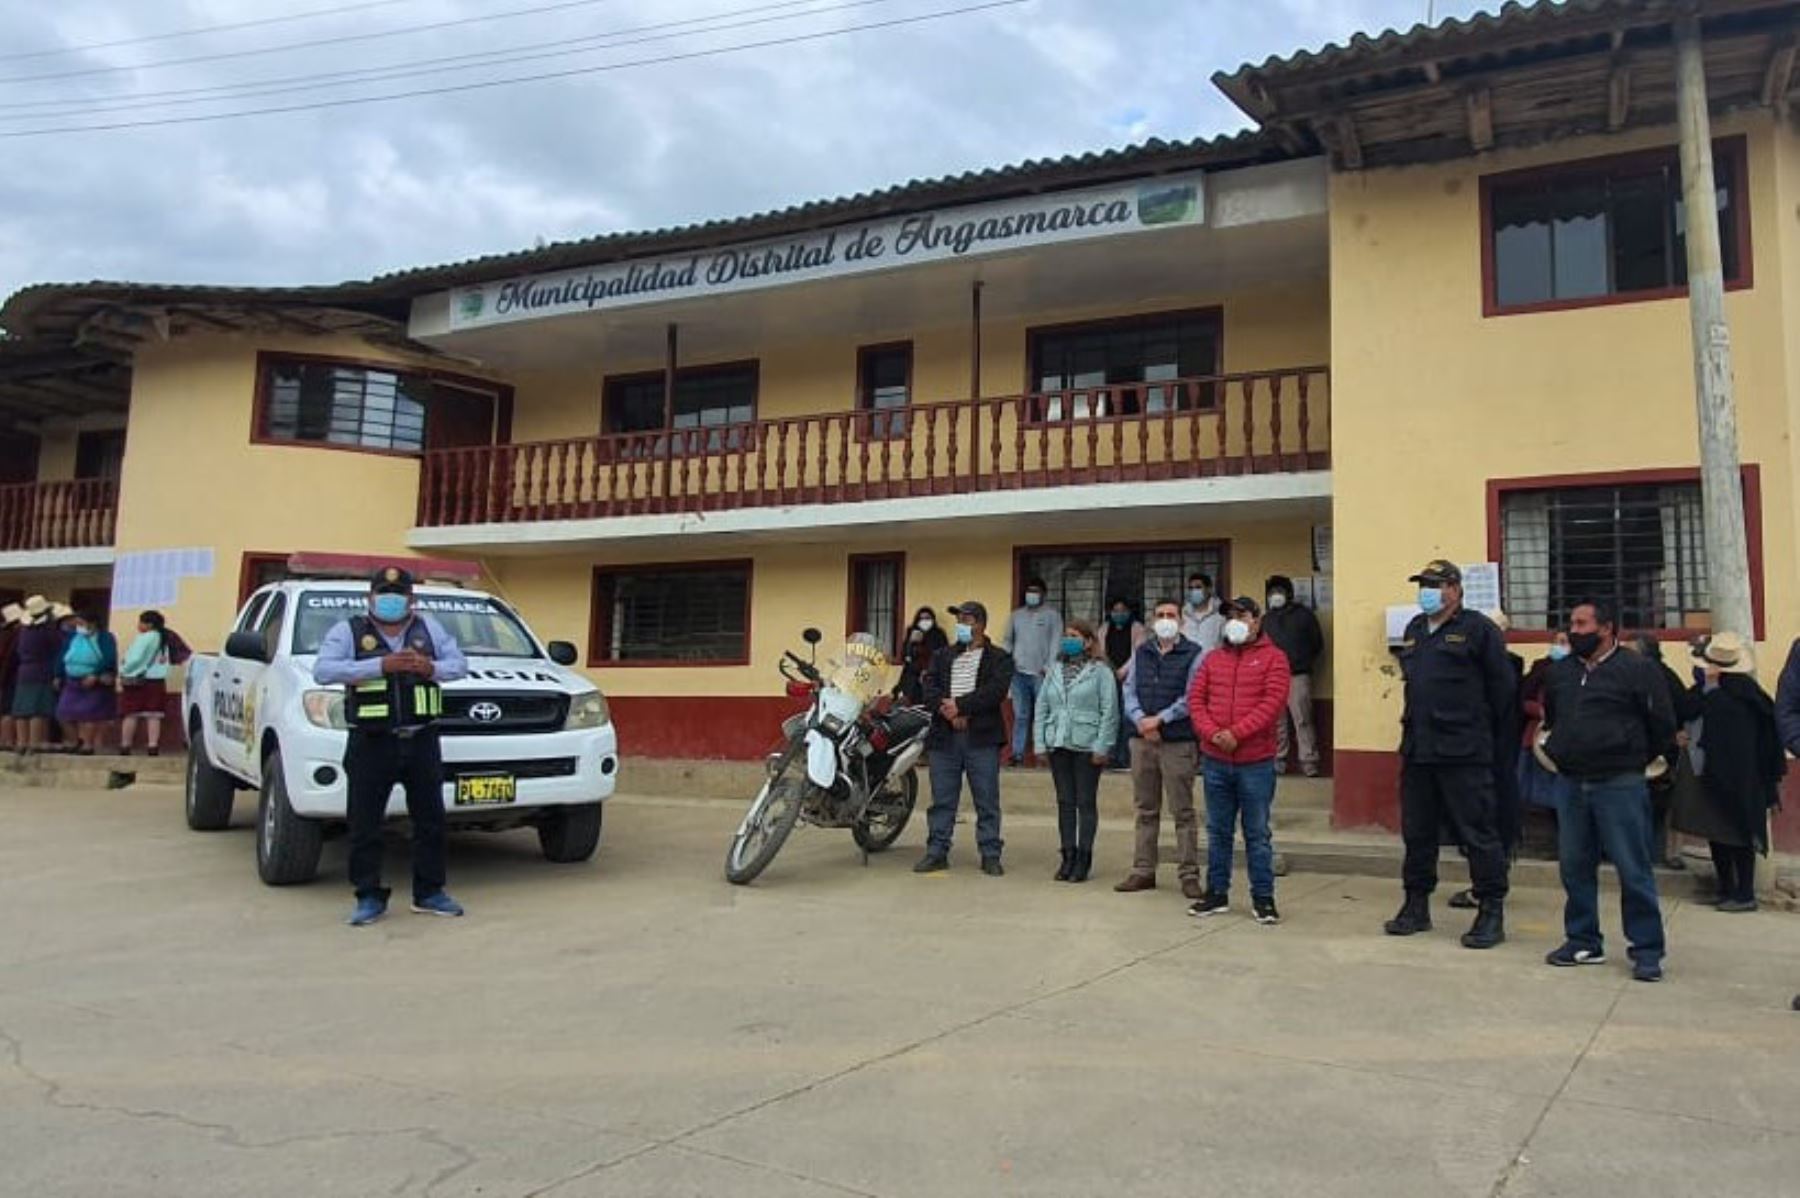 En La Libertad, autoridades municipales entregaron un patrullero y una motocicleta a la comisaría de Angasmarca para reforzar las tareas de seguridad ciudadana.